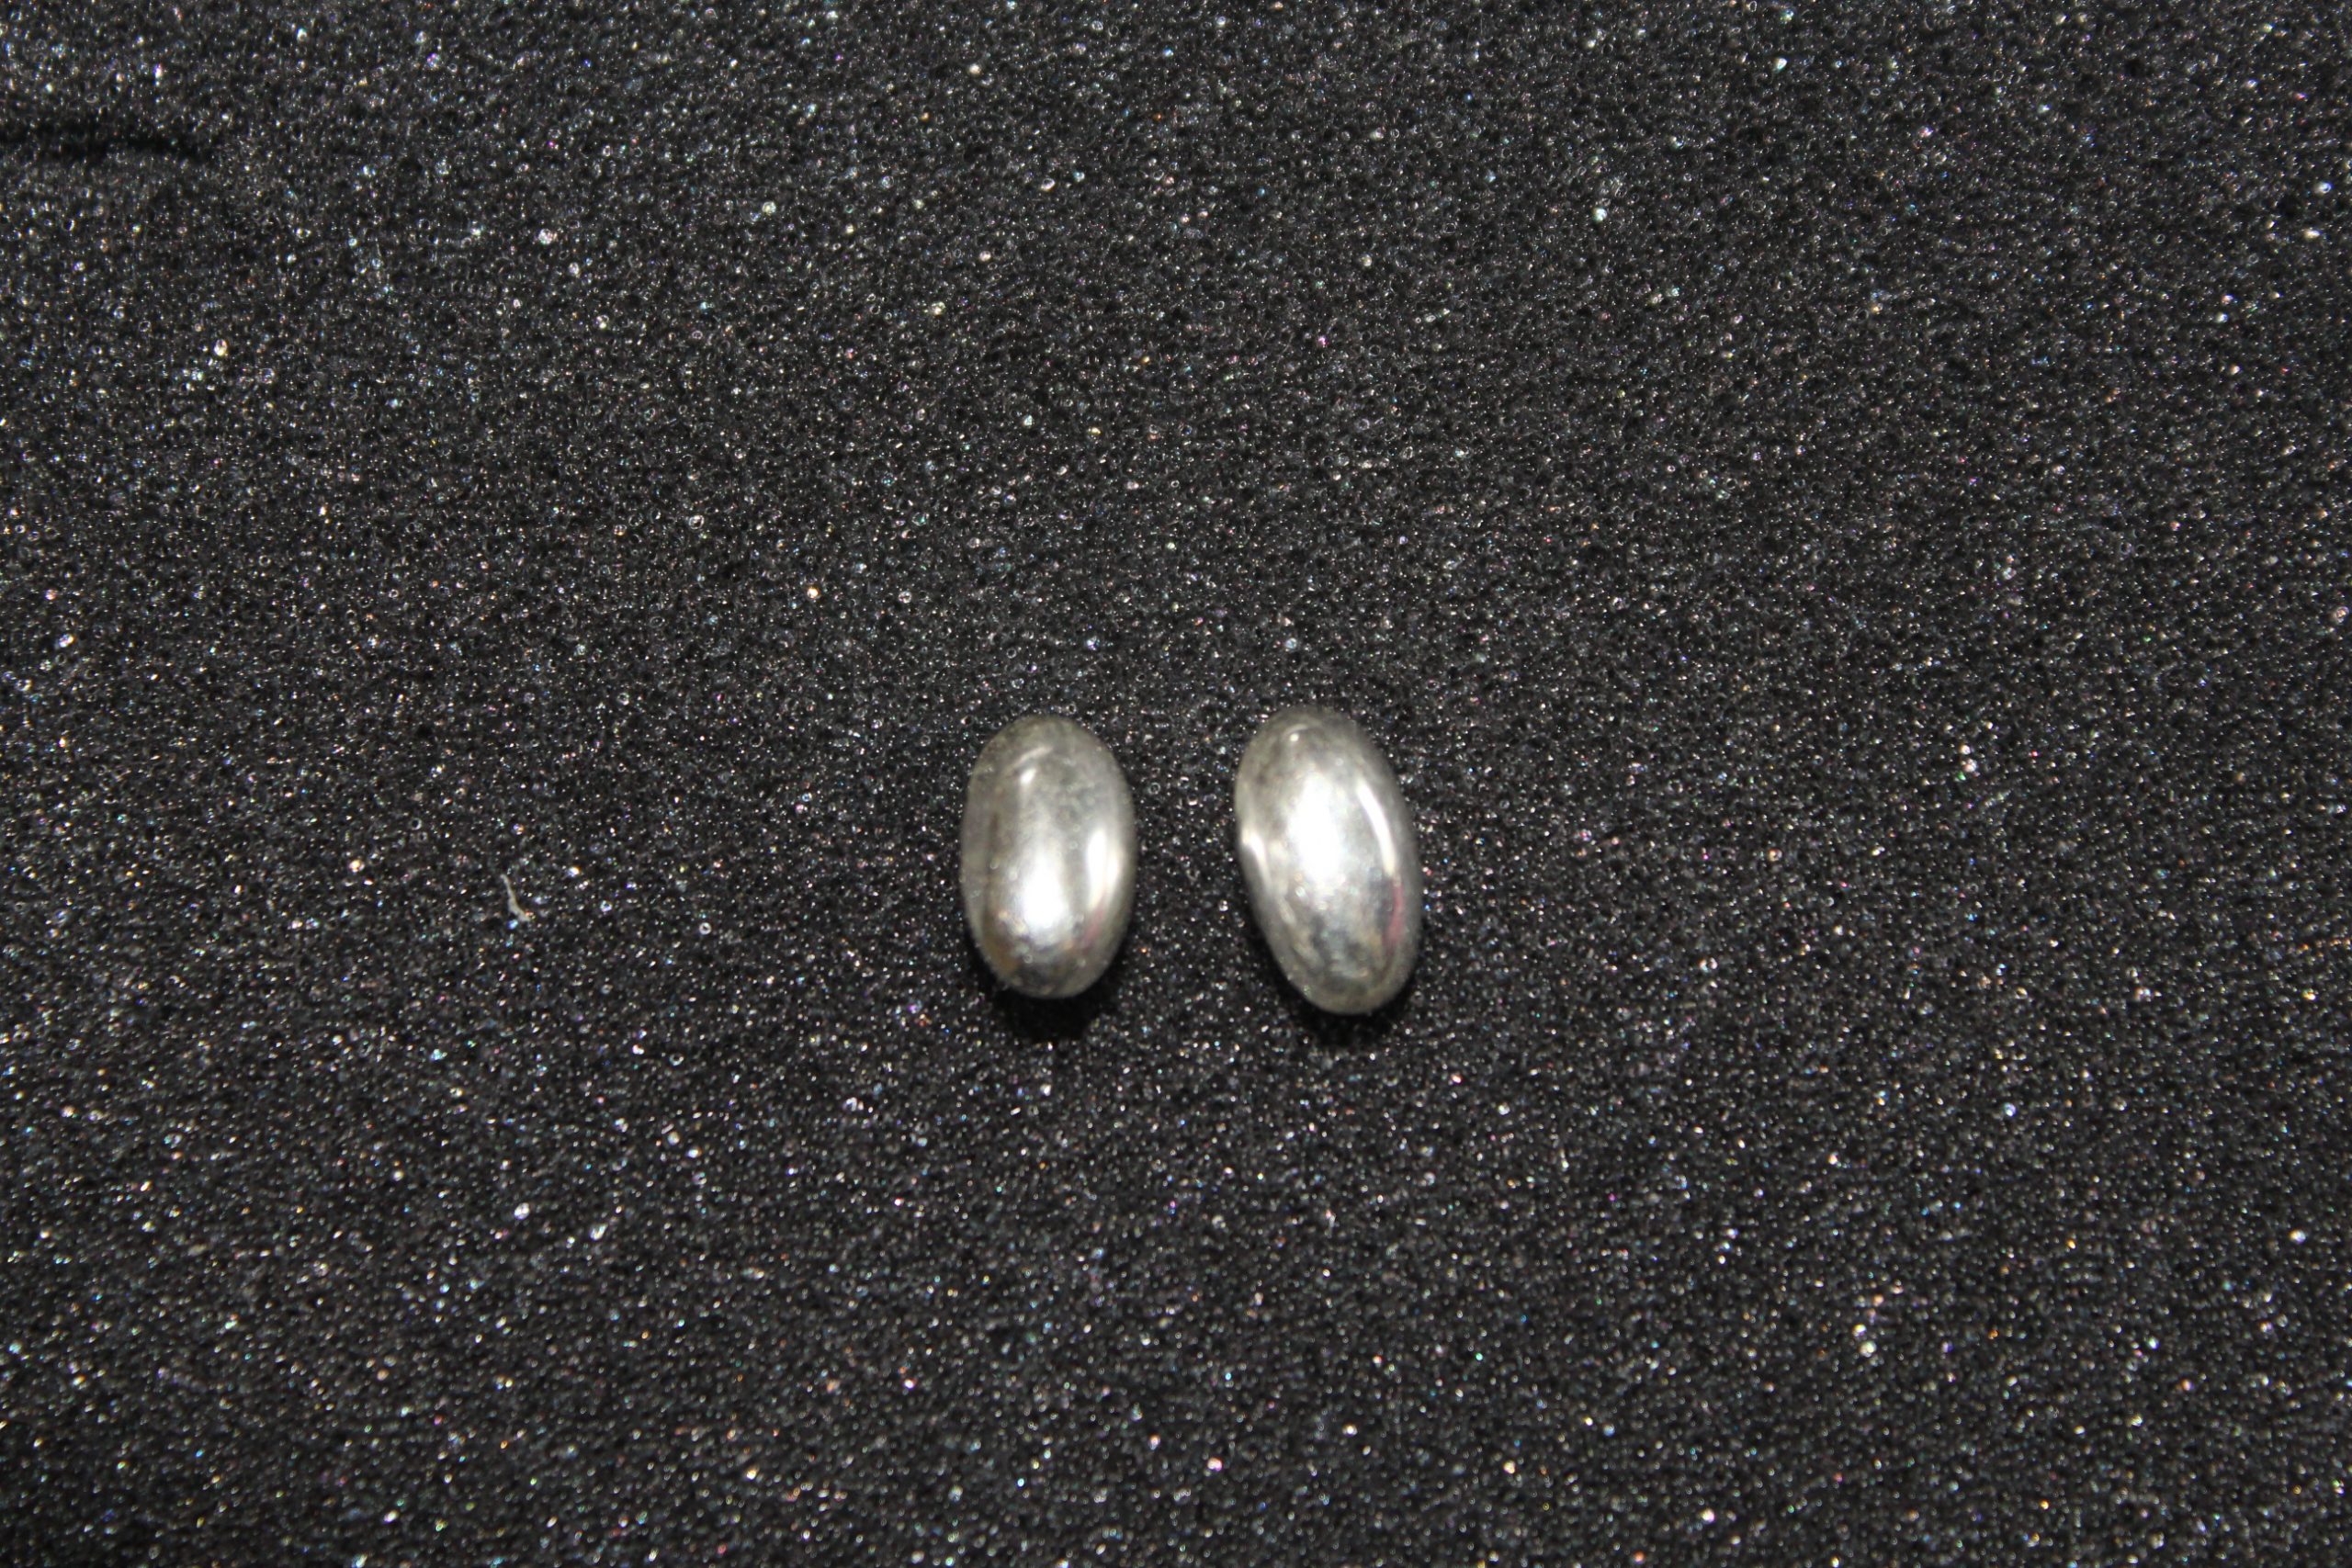 Silver Jelly Bean Shaped Earrings